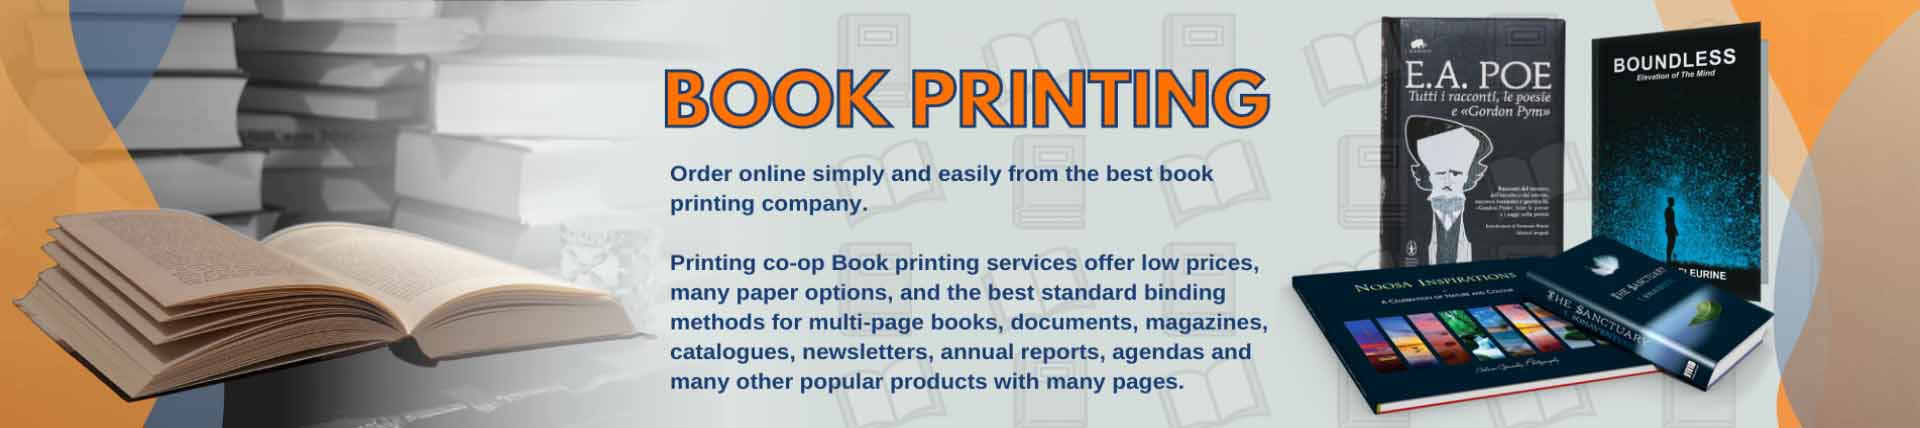 book_printing